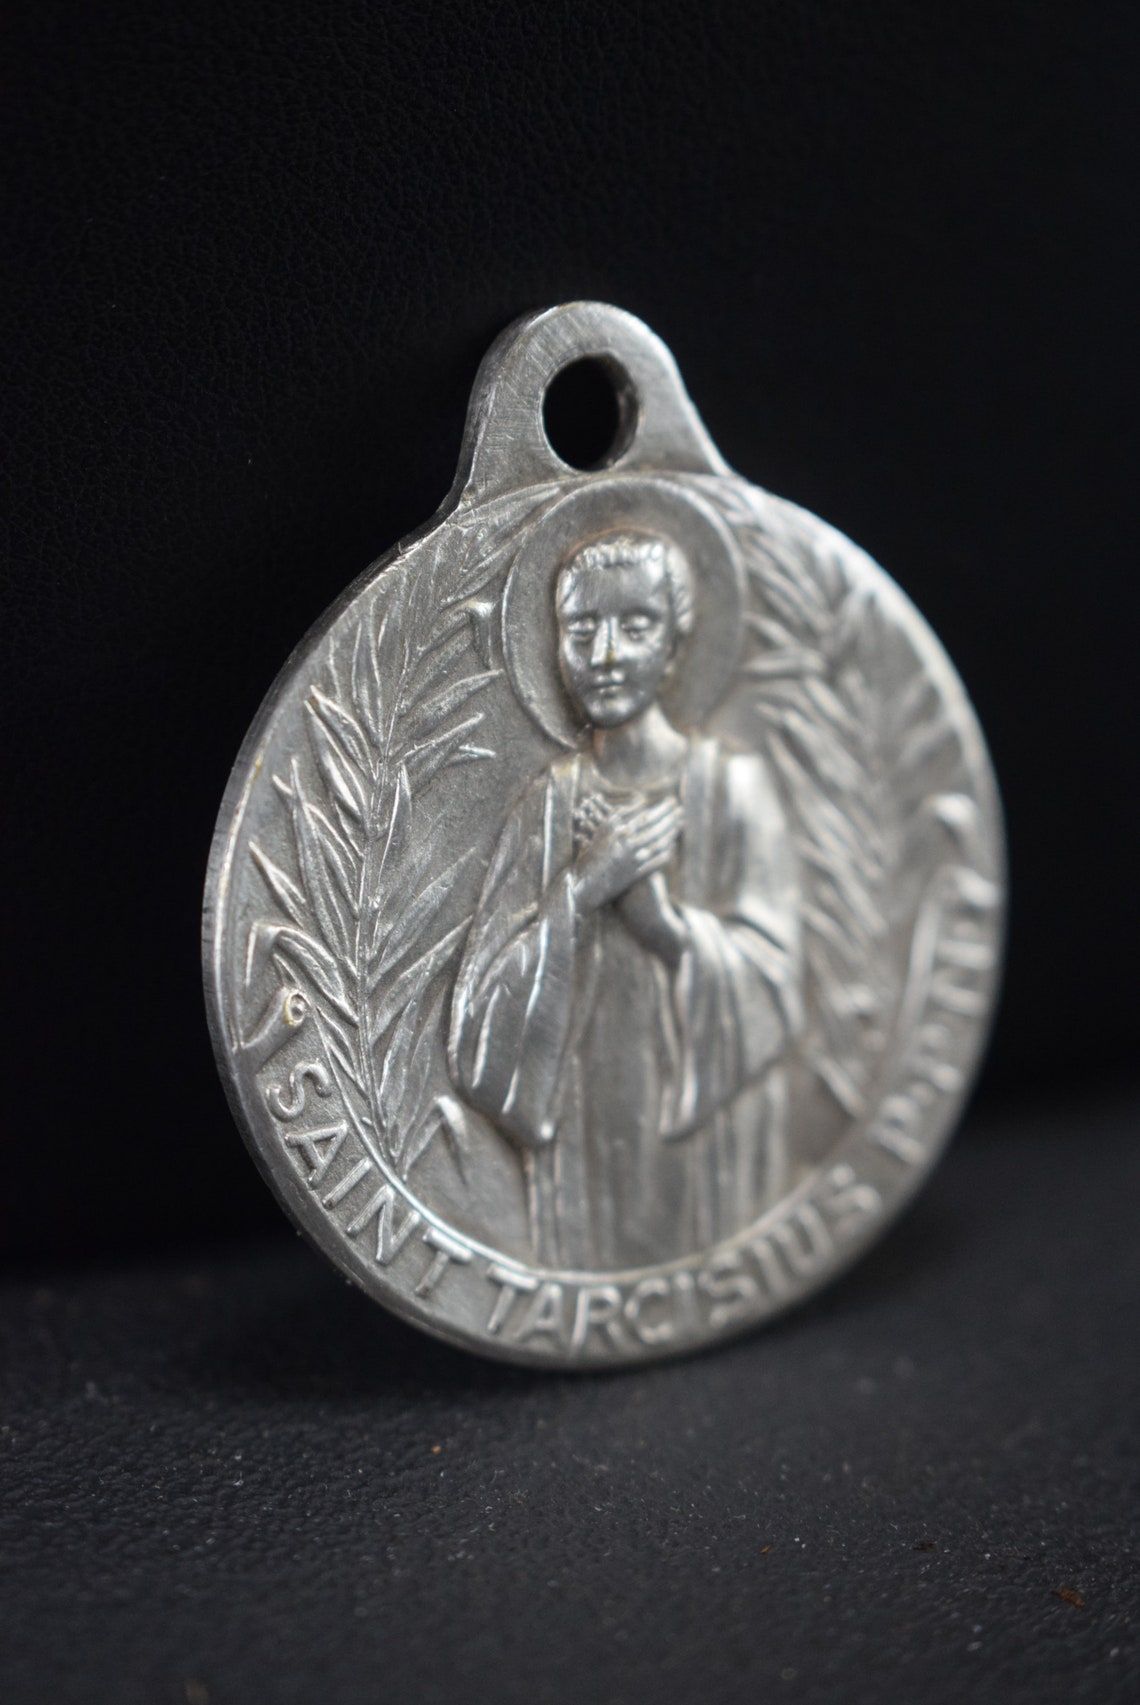 St Tarcisius Medal by Tshudin